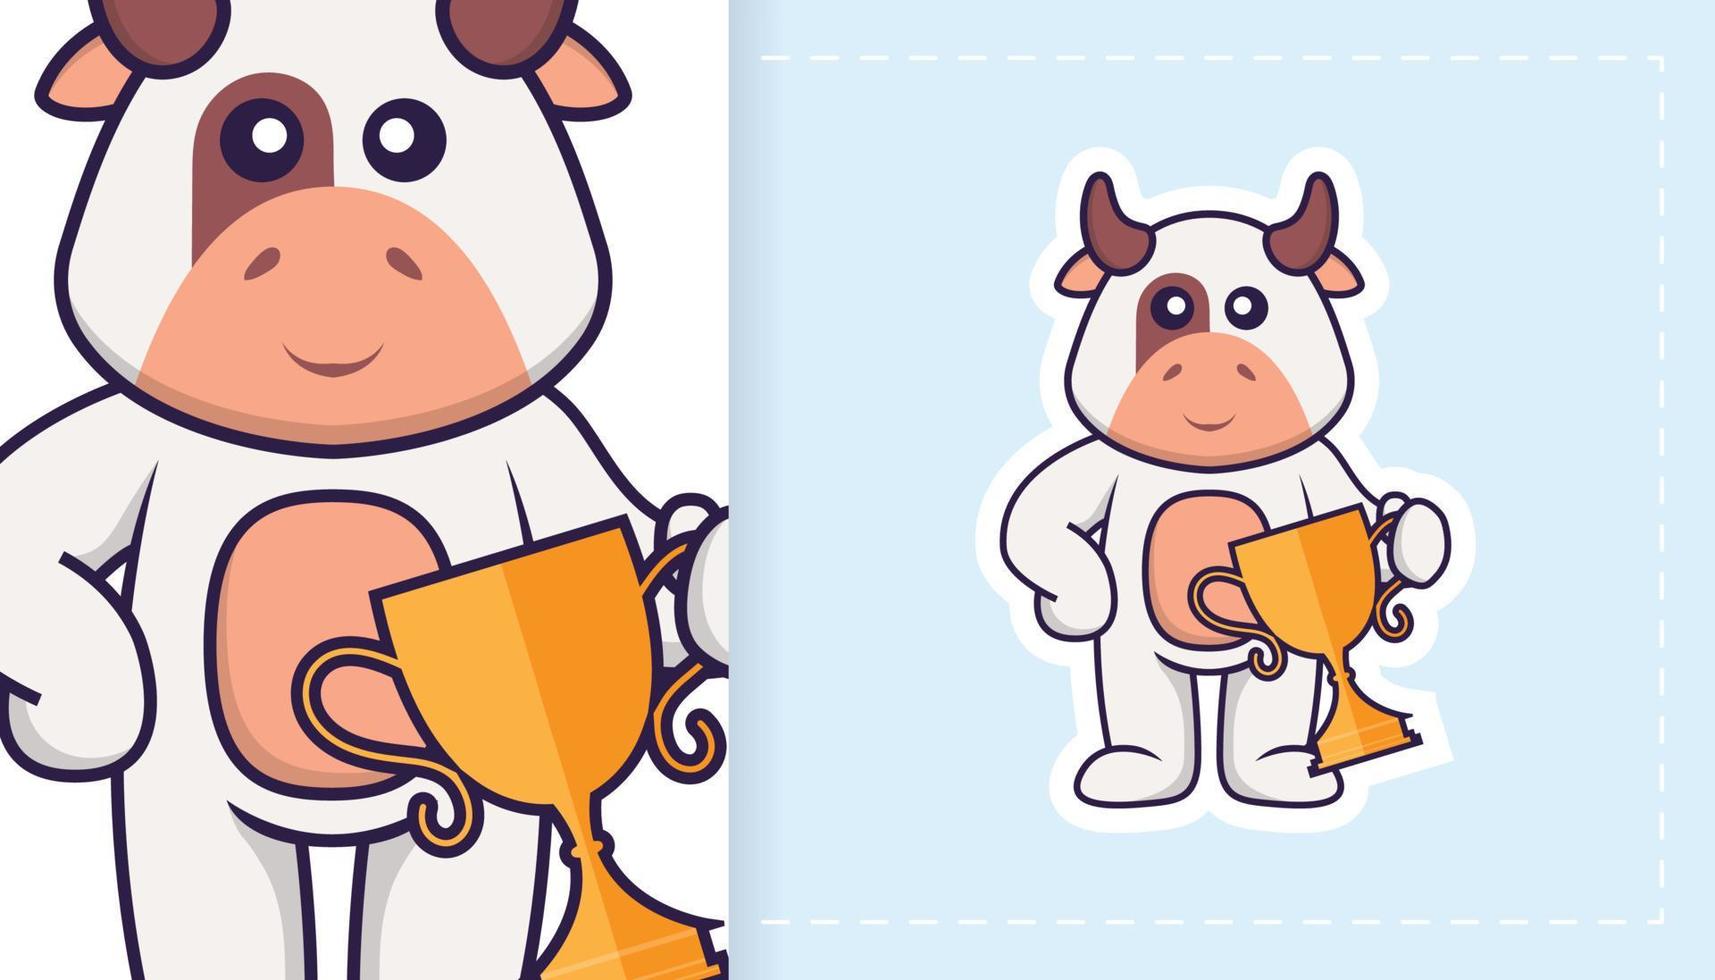 simpatico personaggio mascotte mucca. può essere utilizzato per adesivi, toppe, tessuti, carta. illustrazione vettoriale